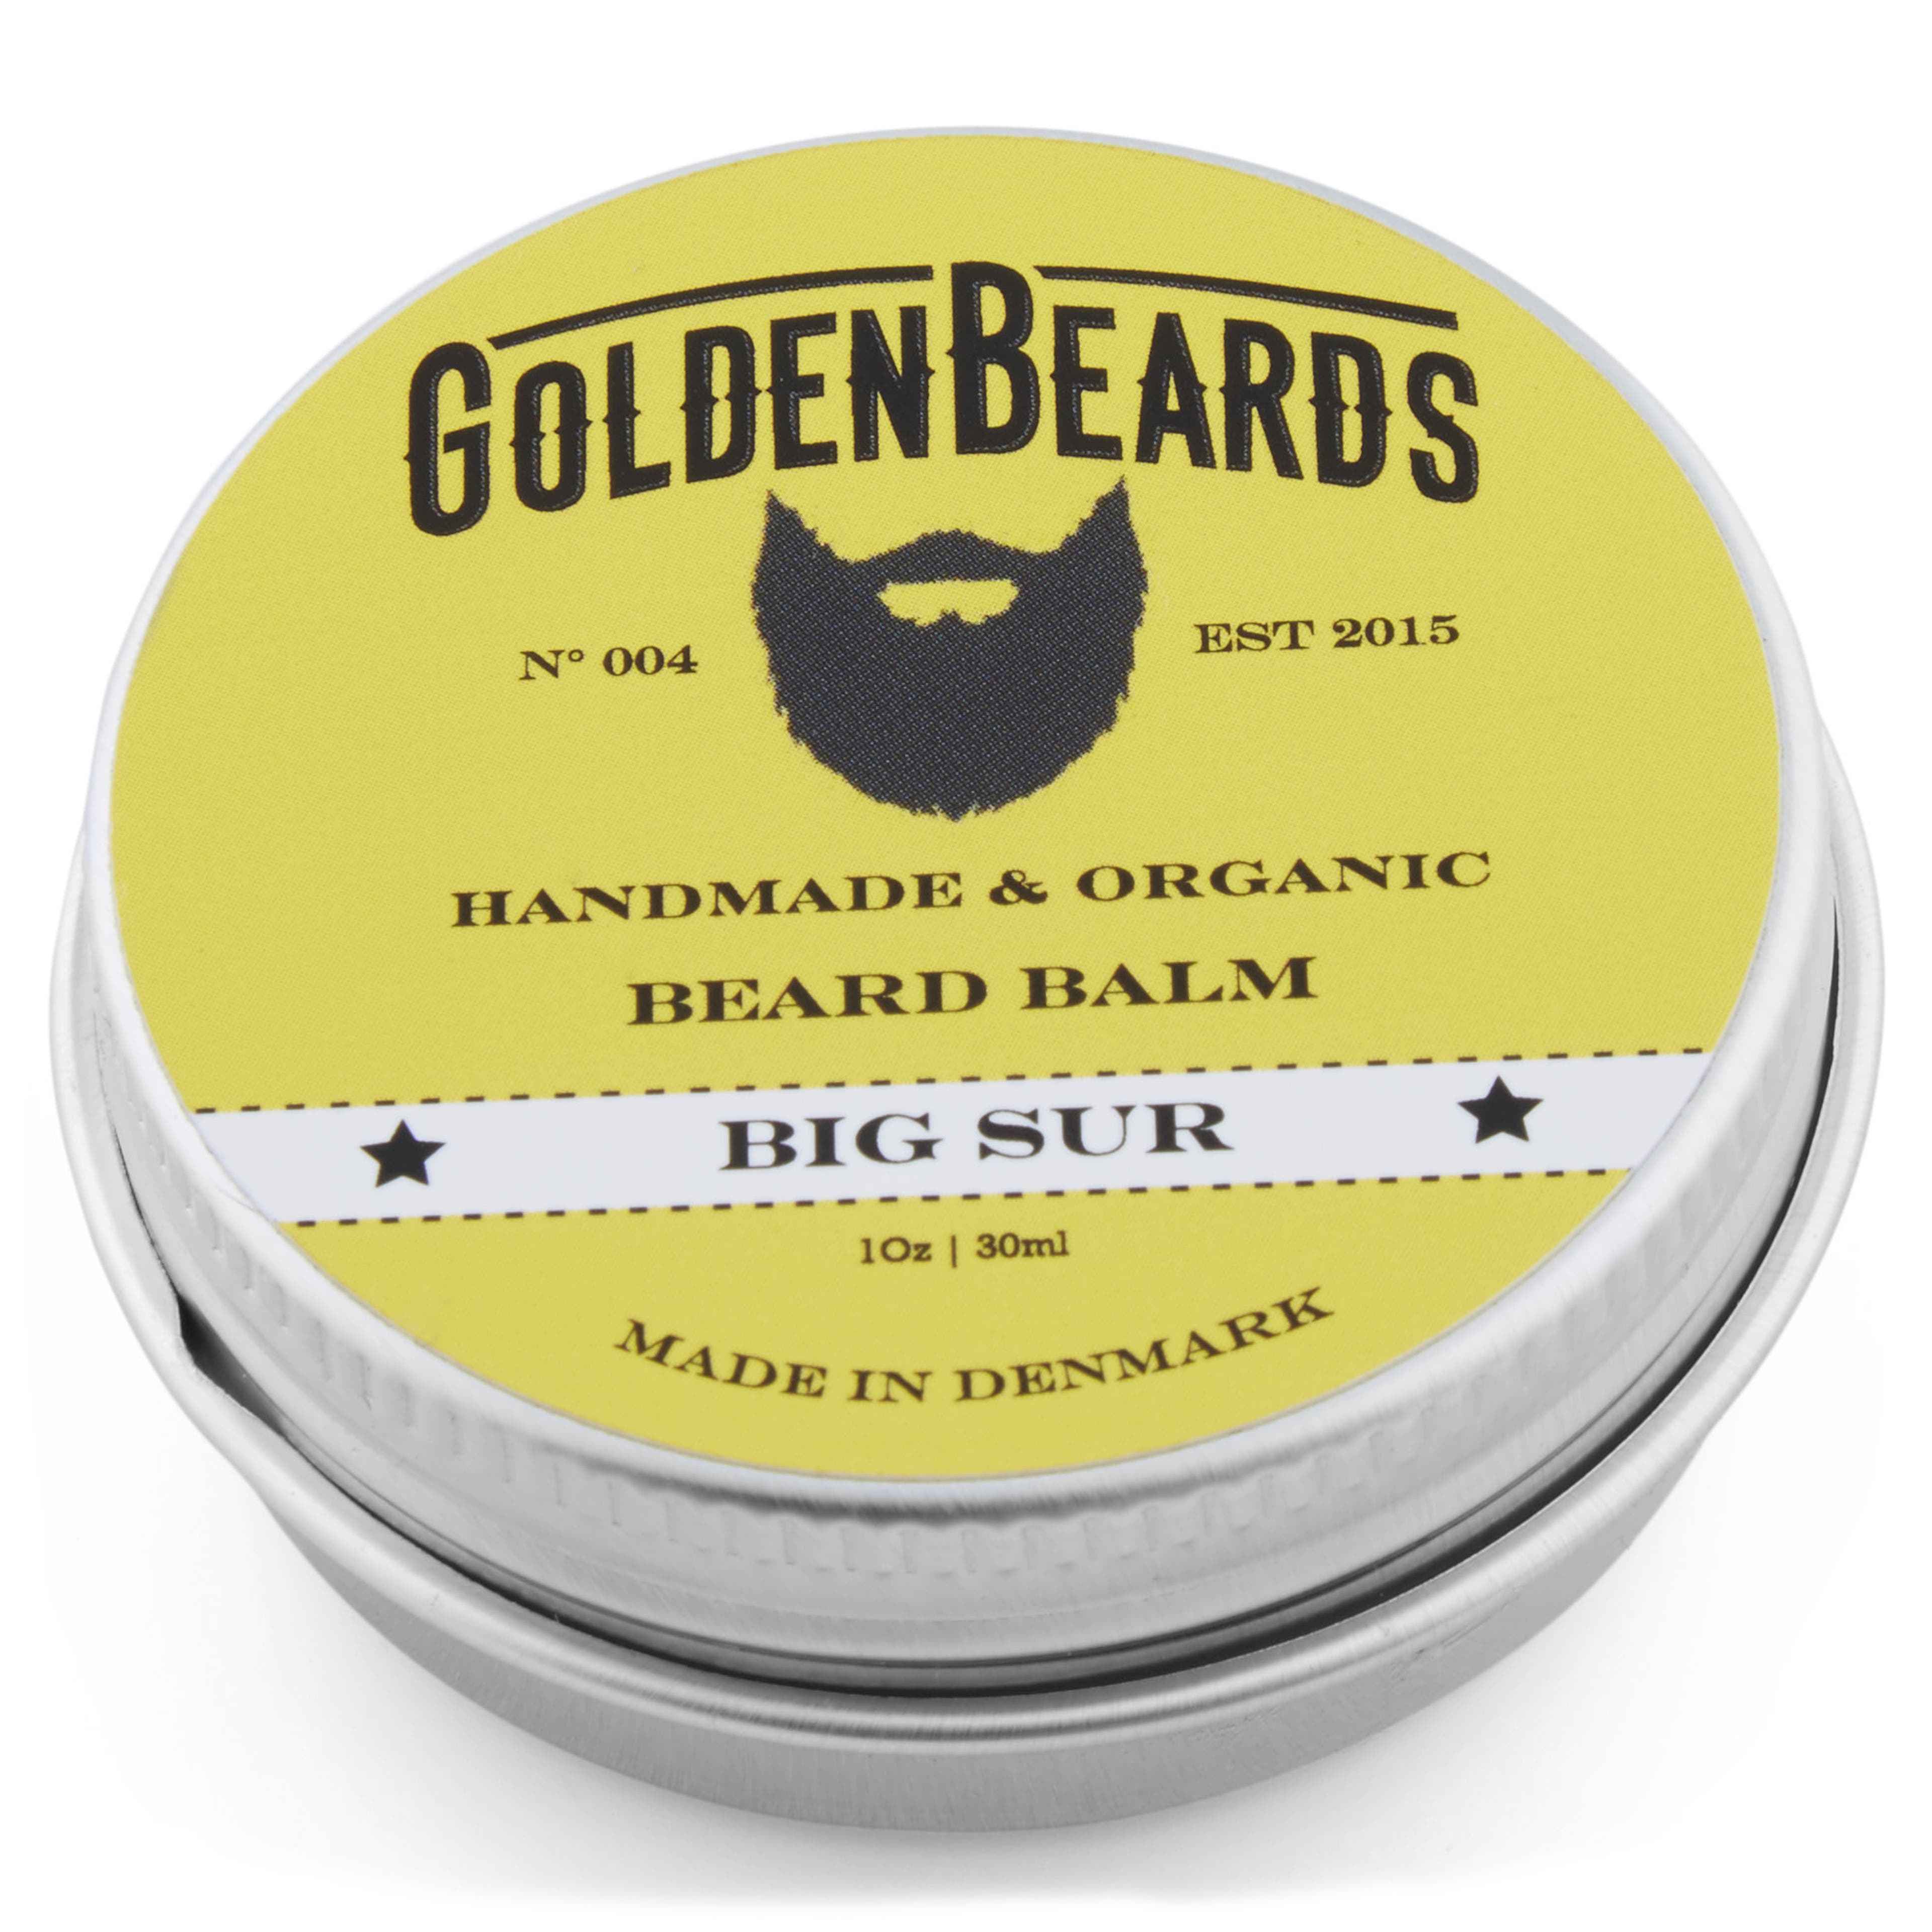 Balsam pentru barbă organic Big Sur